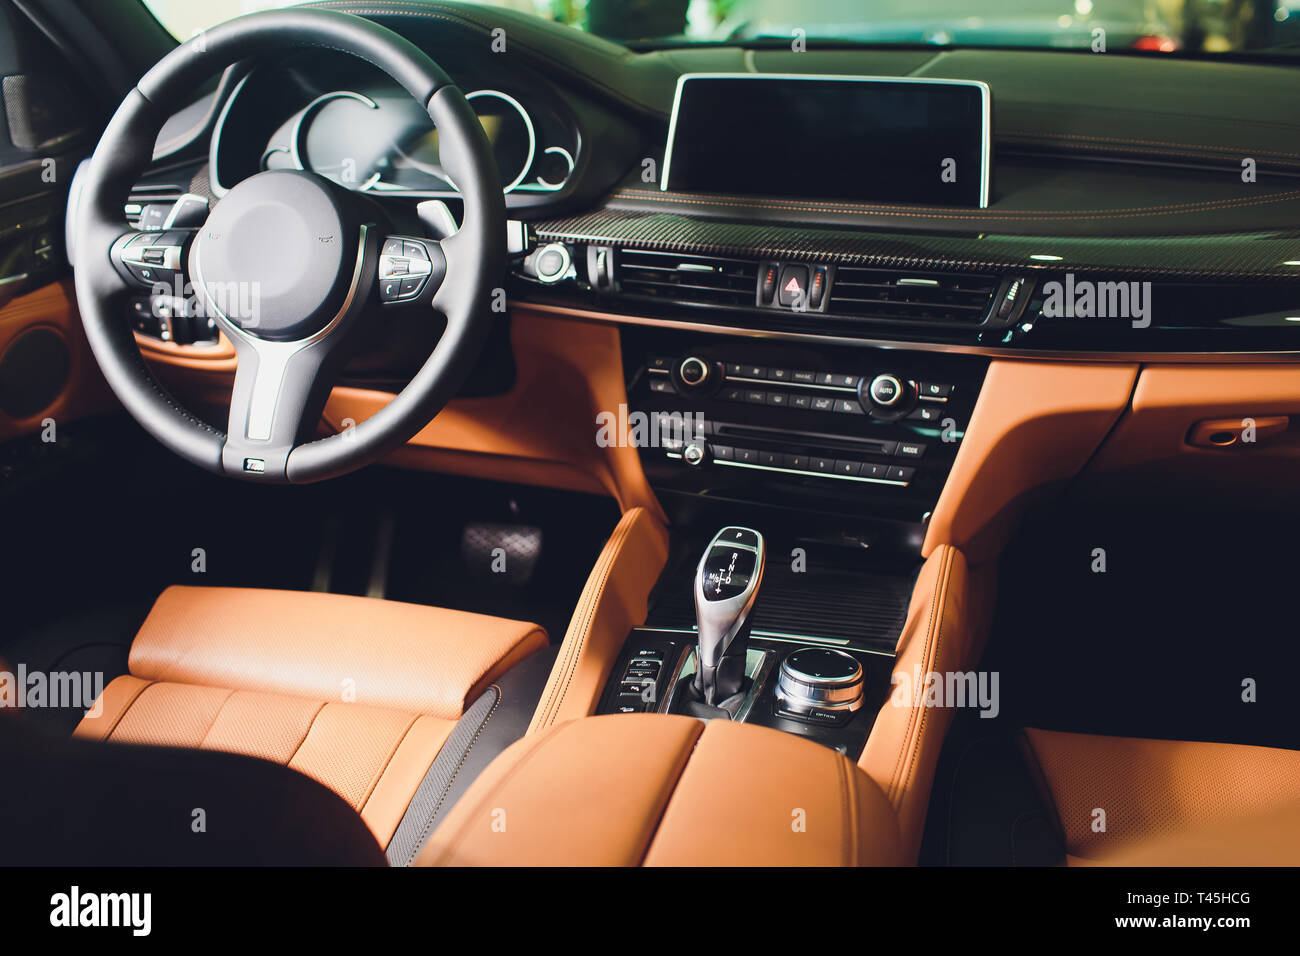 Moderner Luxus Auto innen. Innenraum der Prestige modernes Auto. Leder  braun Sitze. Orange perforiertes Leder im Cockpit Stockfotografie - Alamy